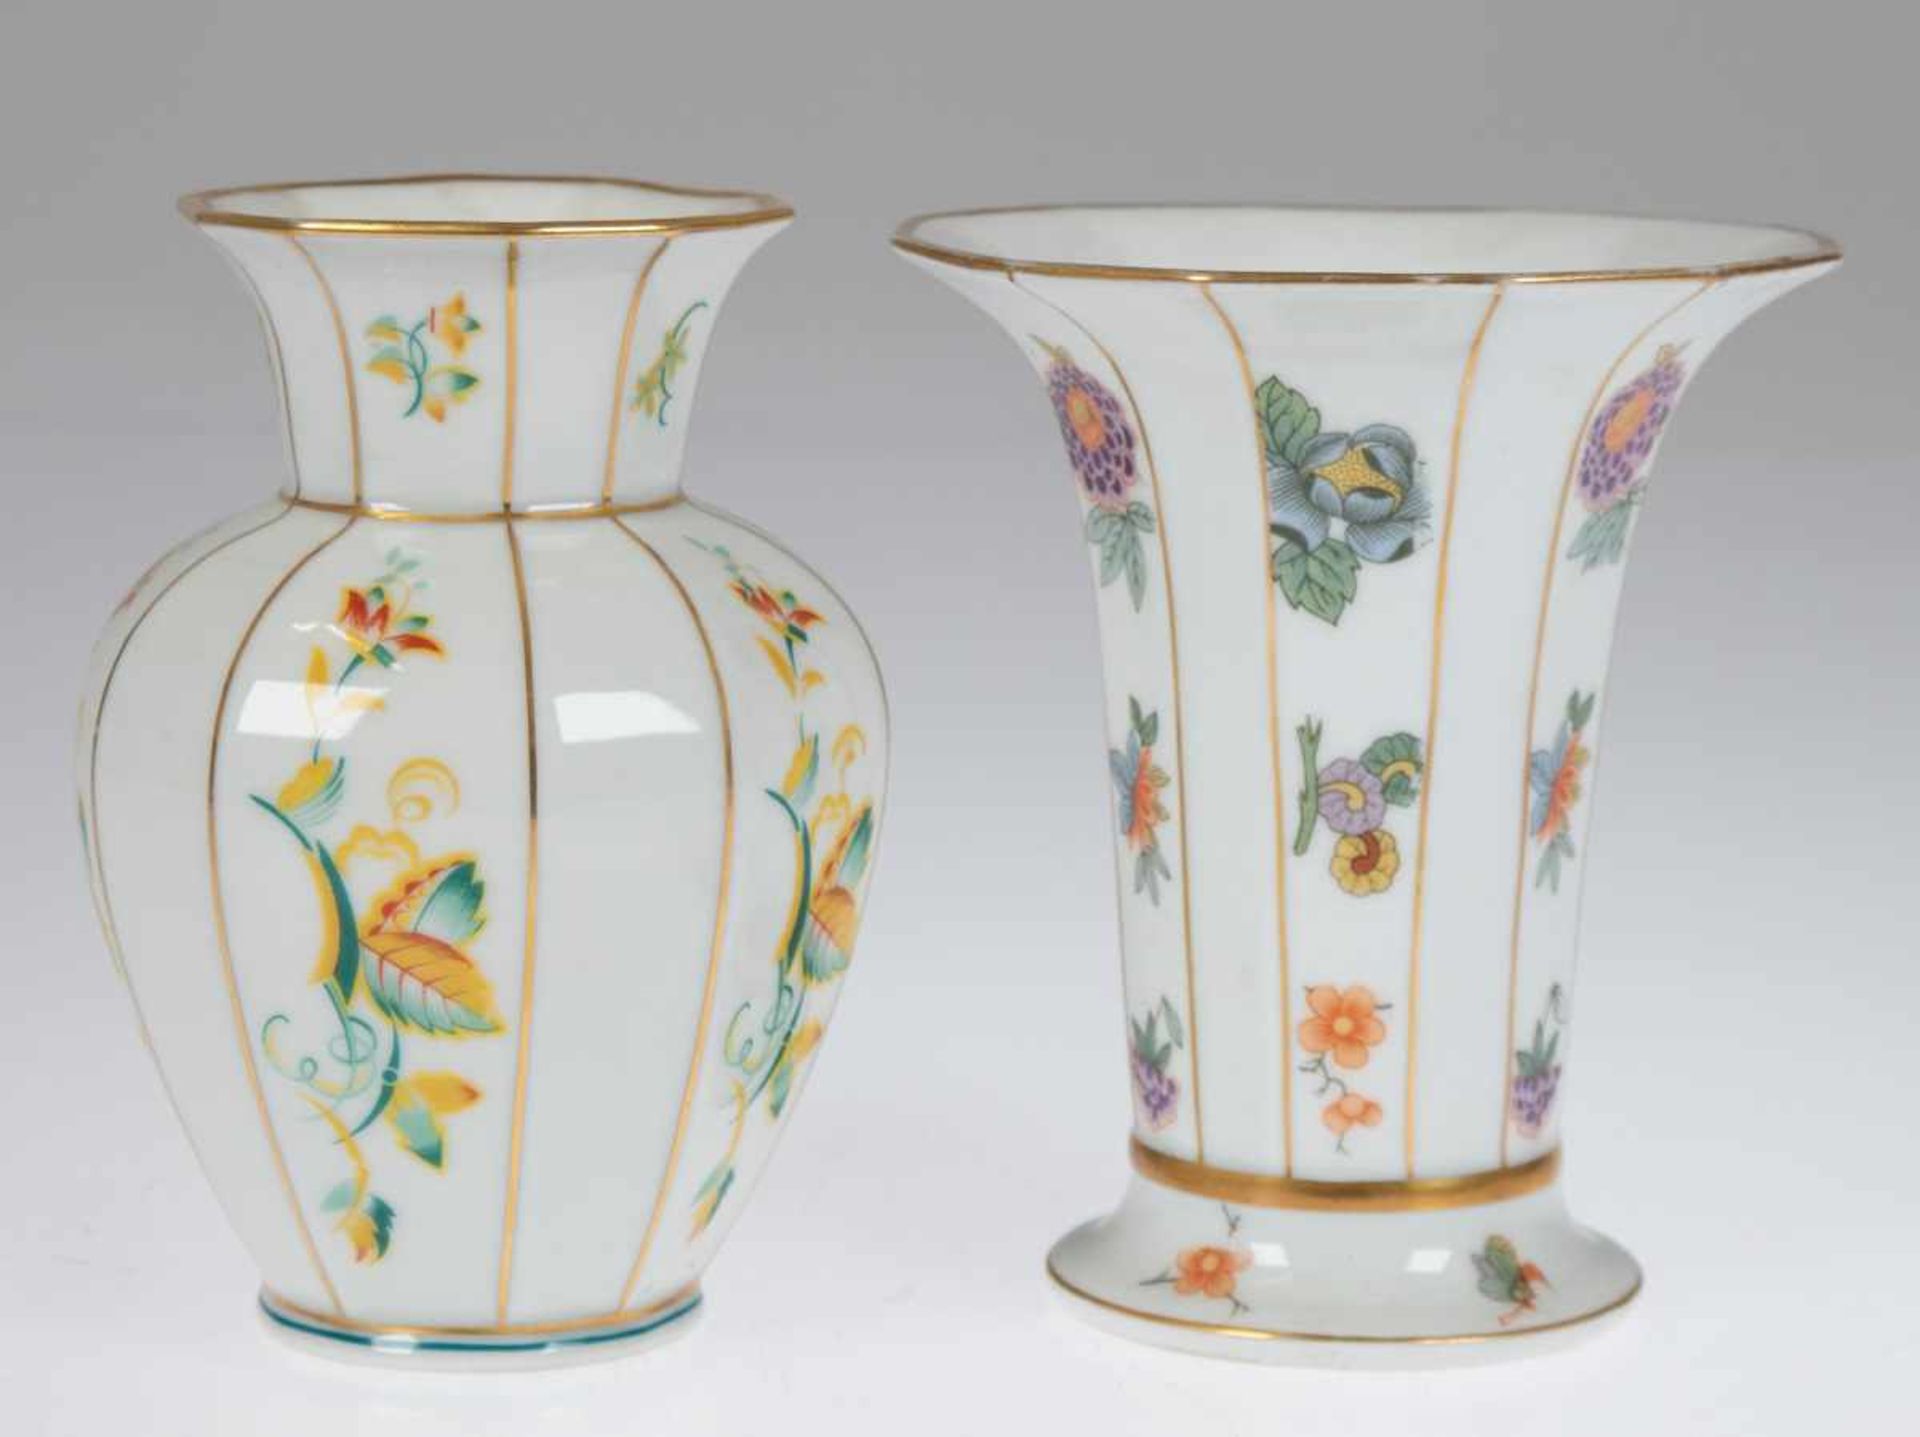 2 Vasen, um 1930, Lettin, Heinrich Baensch, polychromer Floraldekor, Goldränder und-streifendekor,